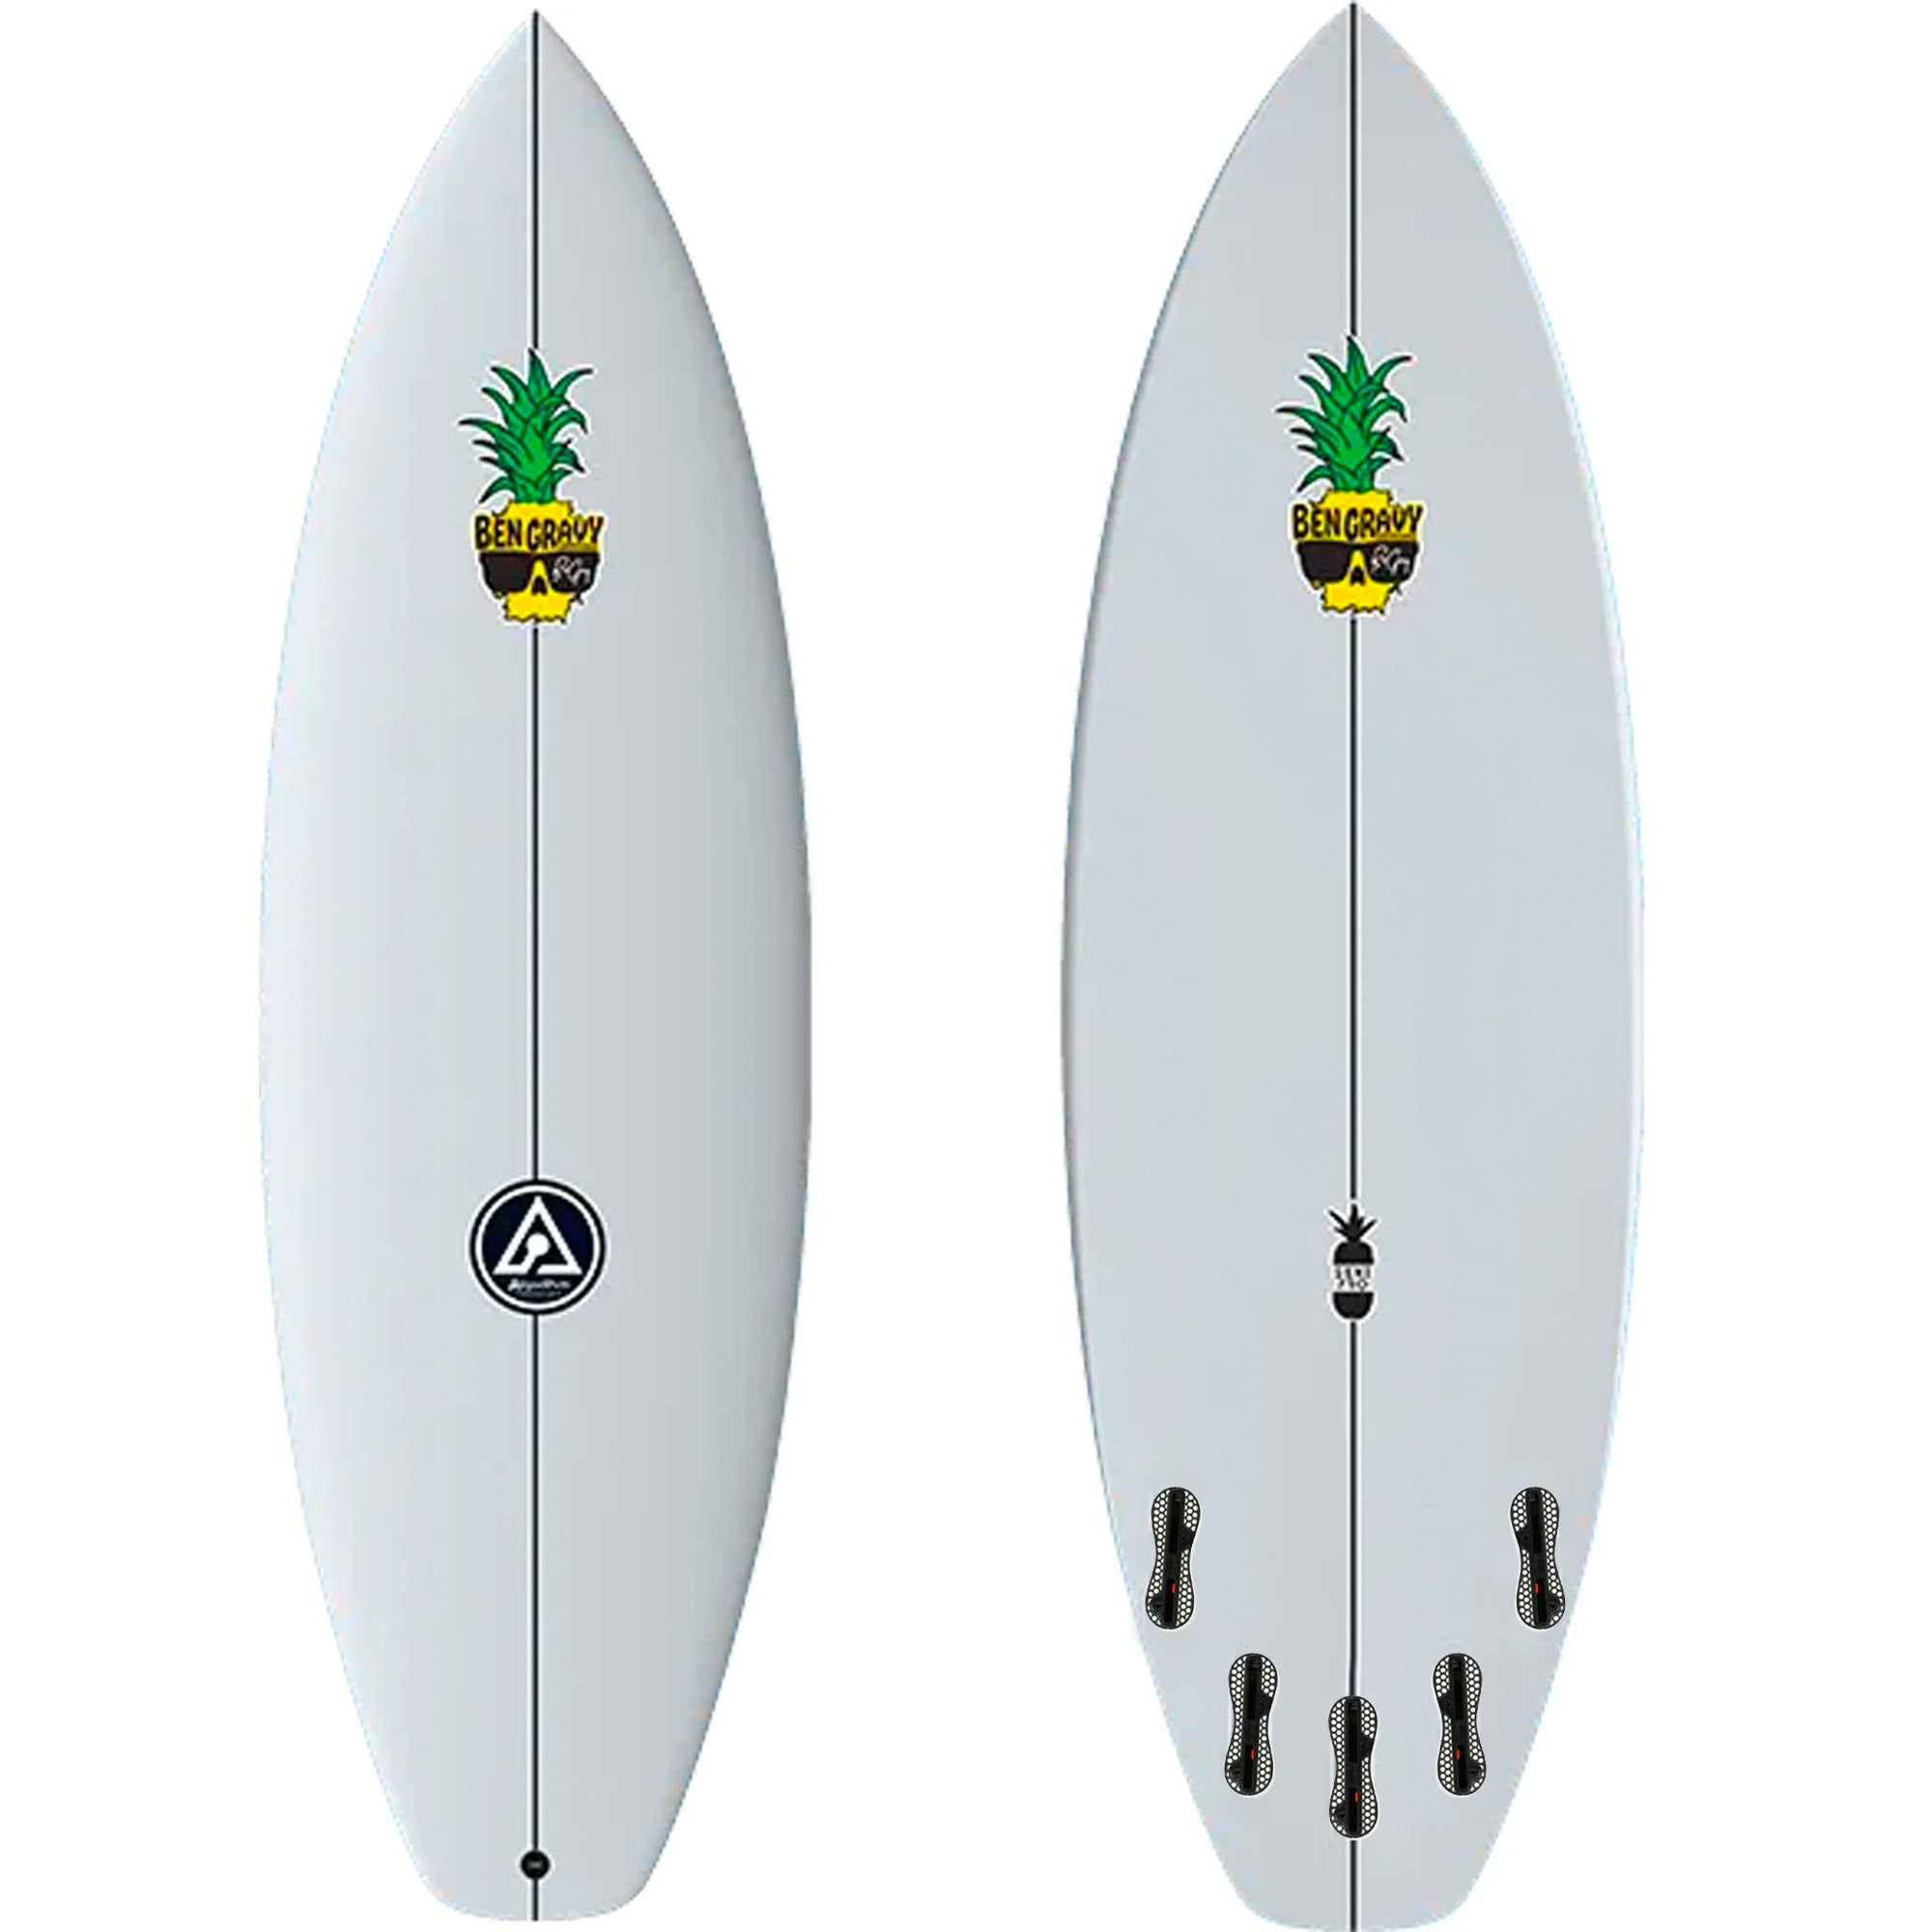 Algorithm Ben Gravy Semi Pro Surfboard - FCS II